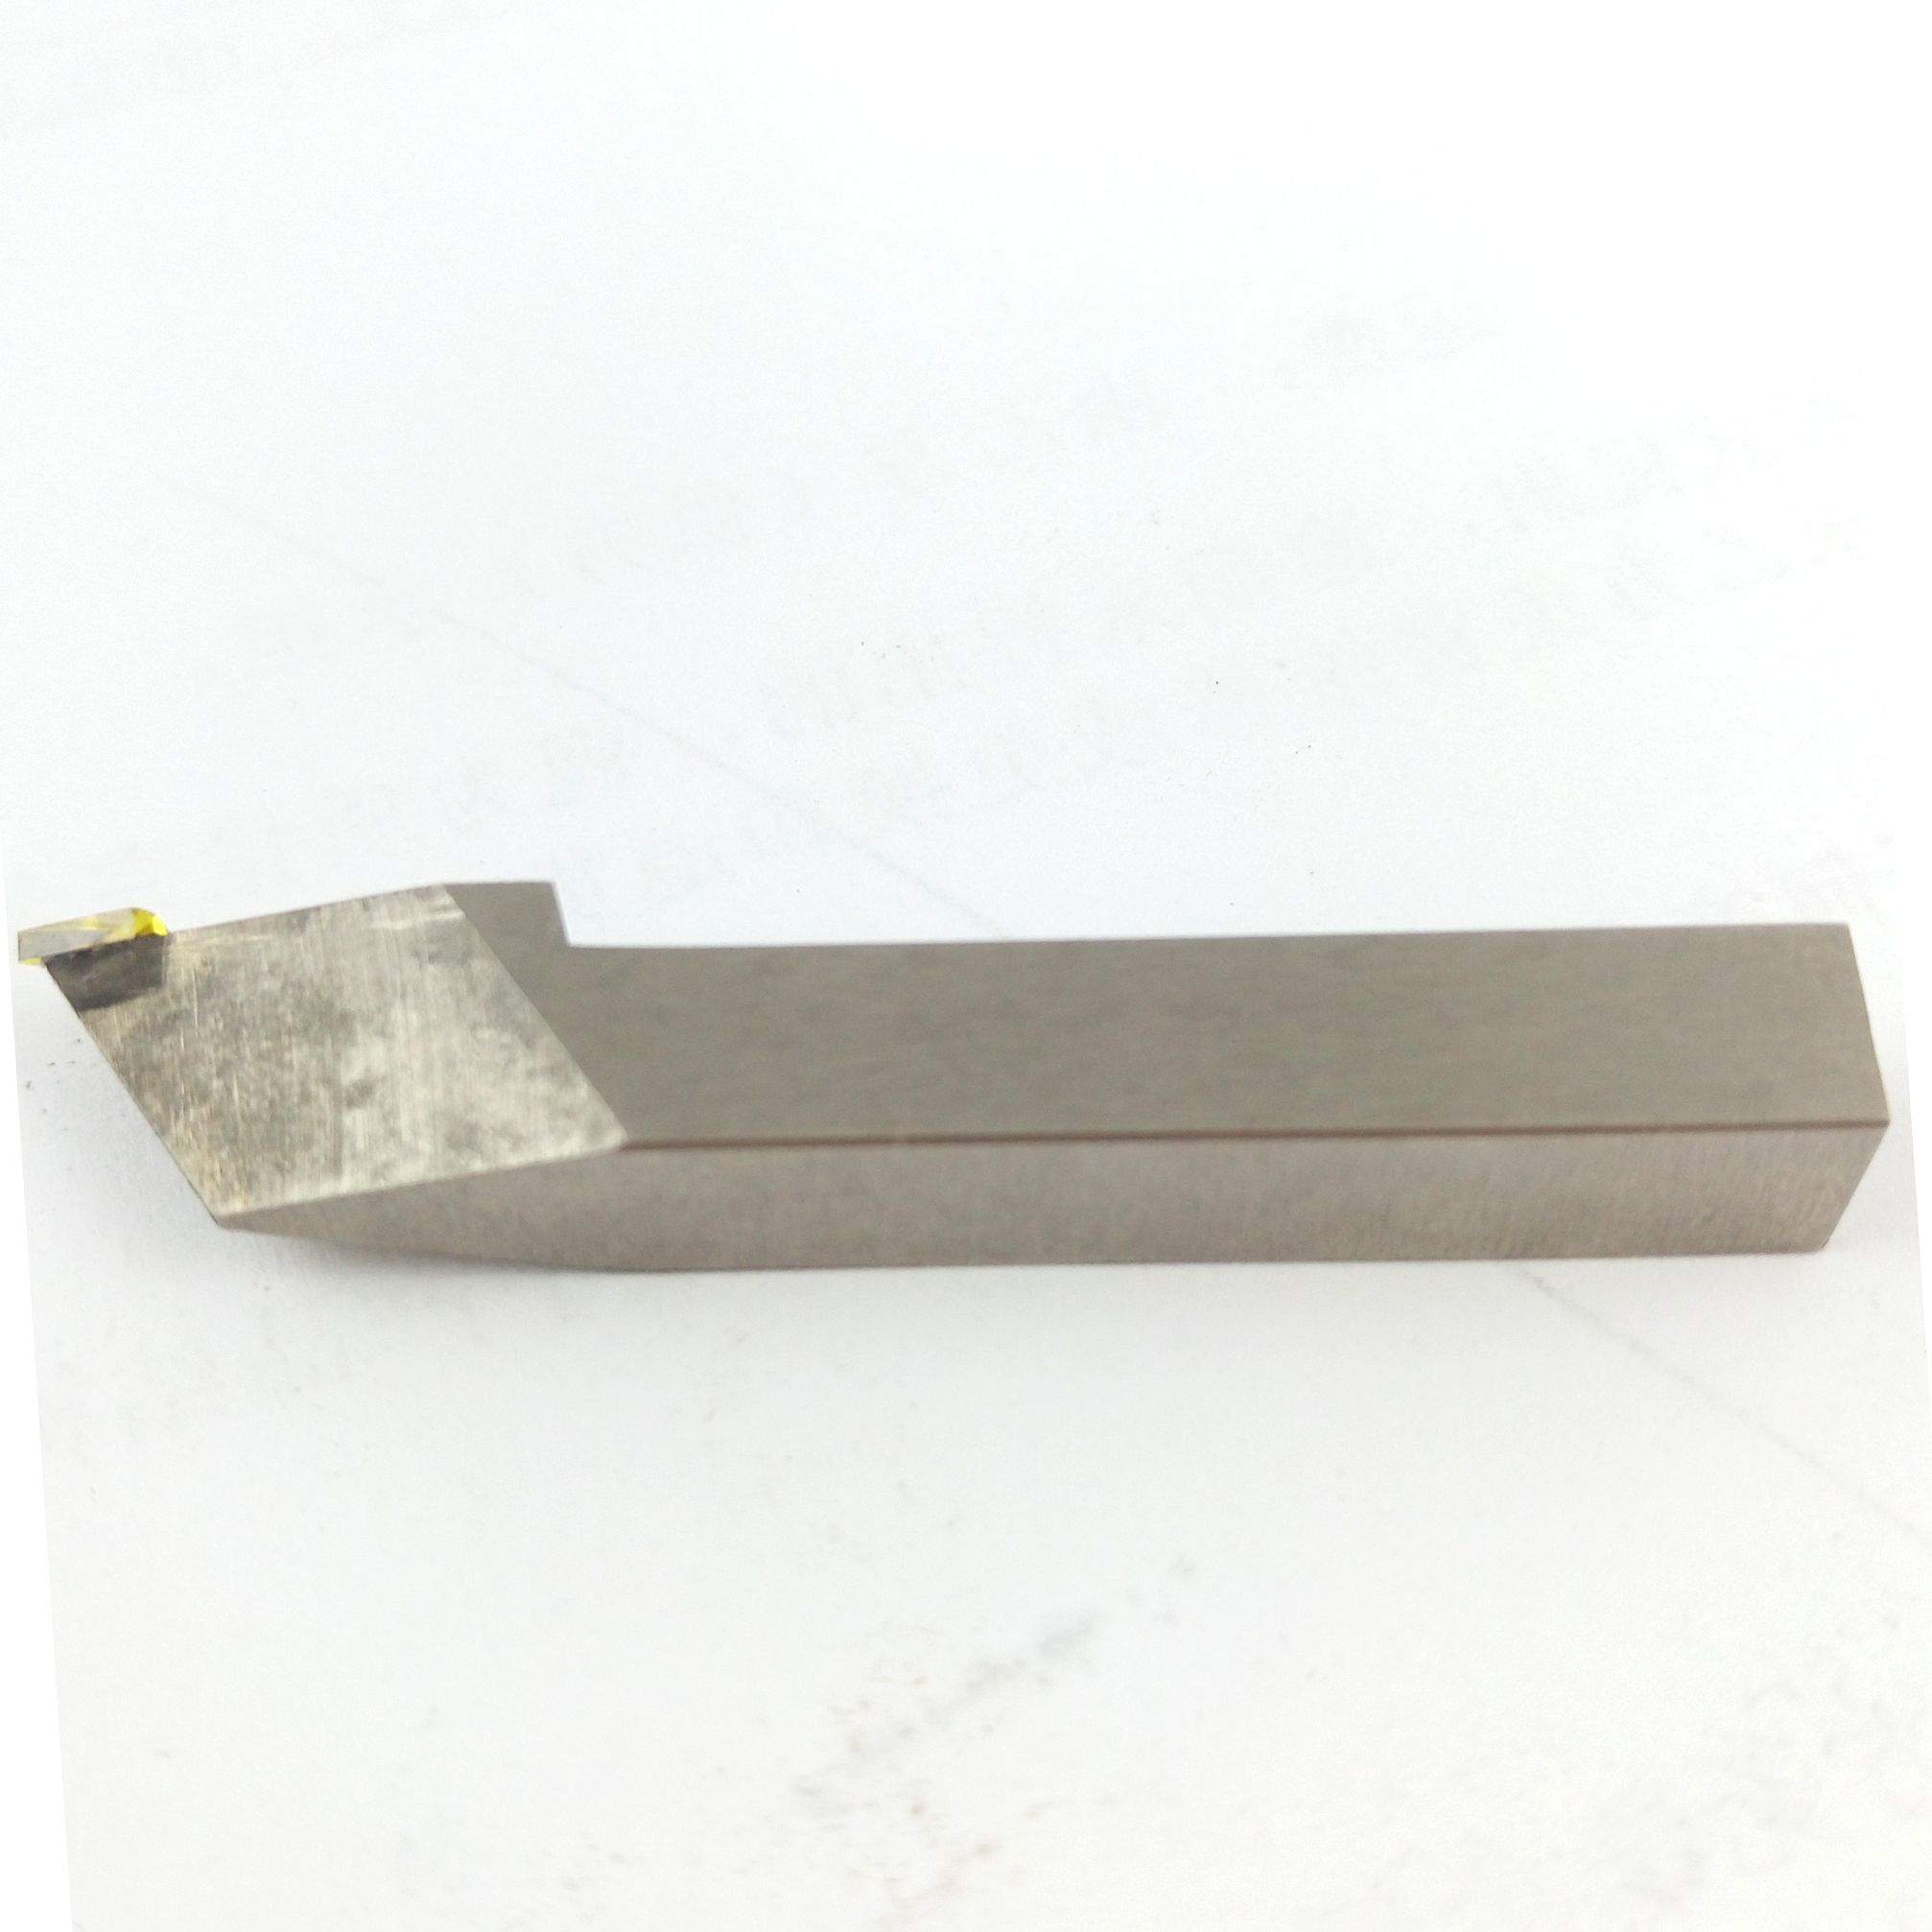 精车三角金属陶瓷数控外圆车刀TNGG160402R-F 钢件铁专用光洁度好-阿里巴巴